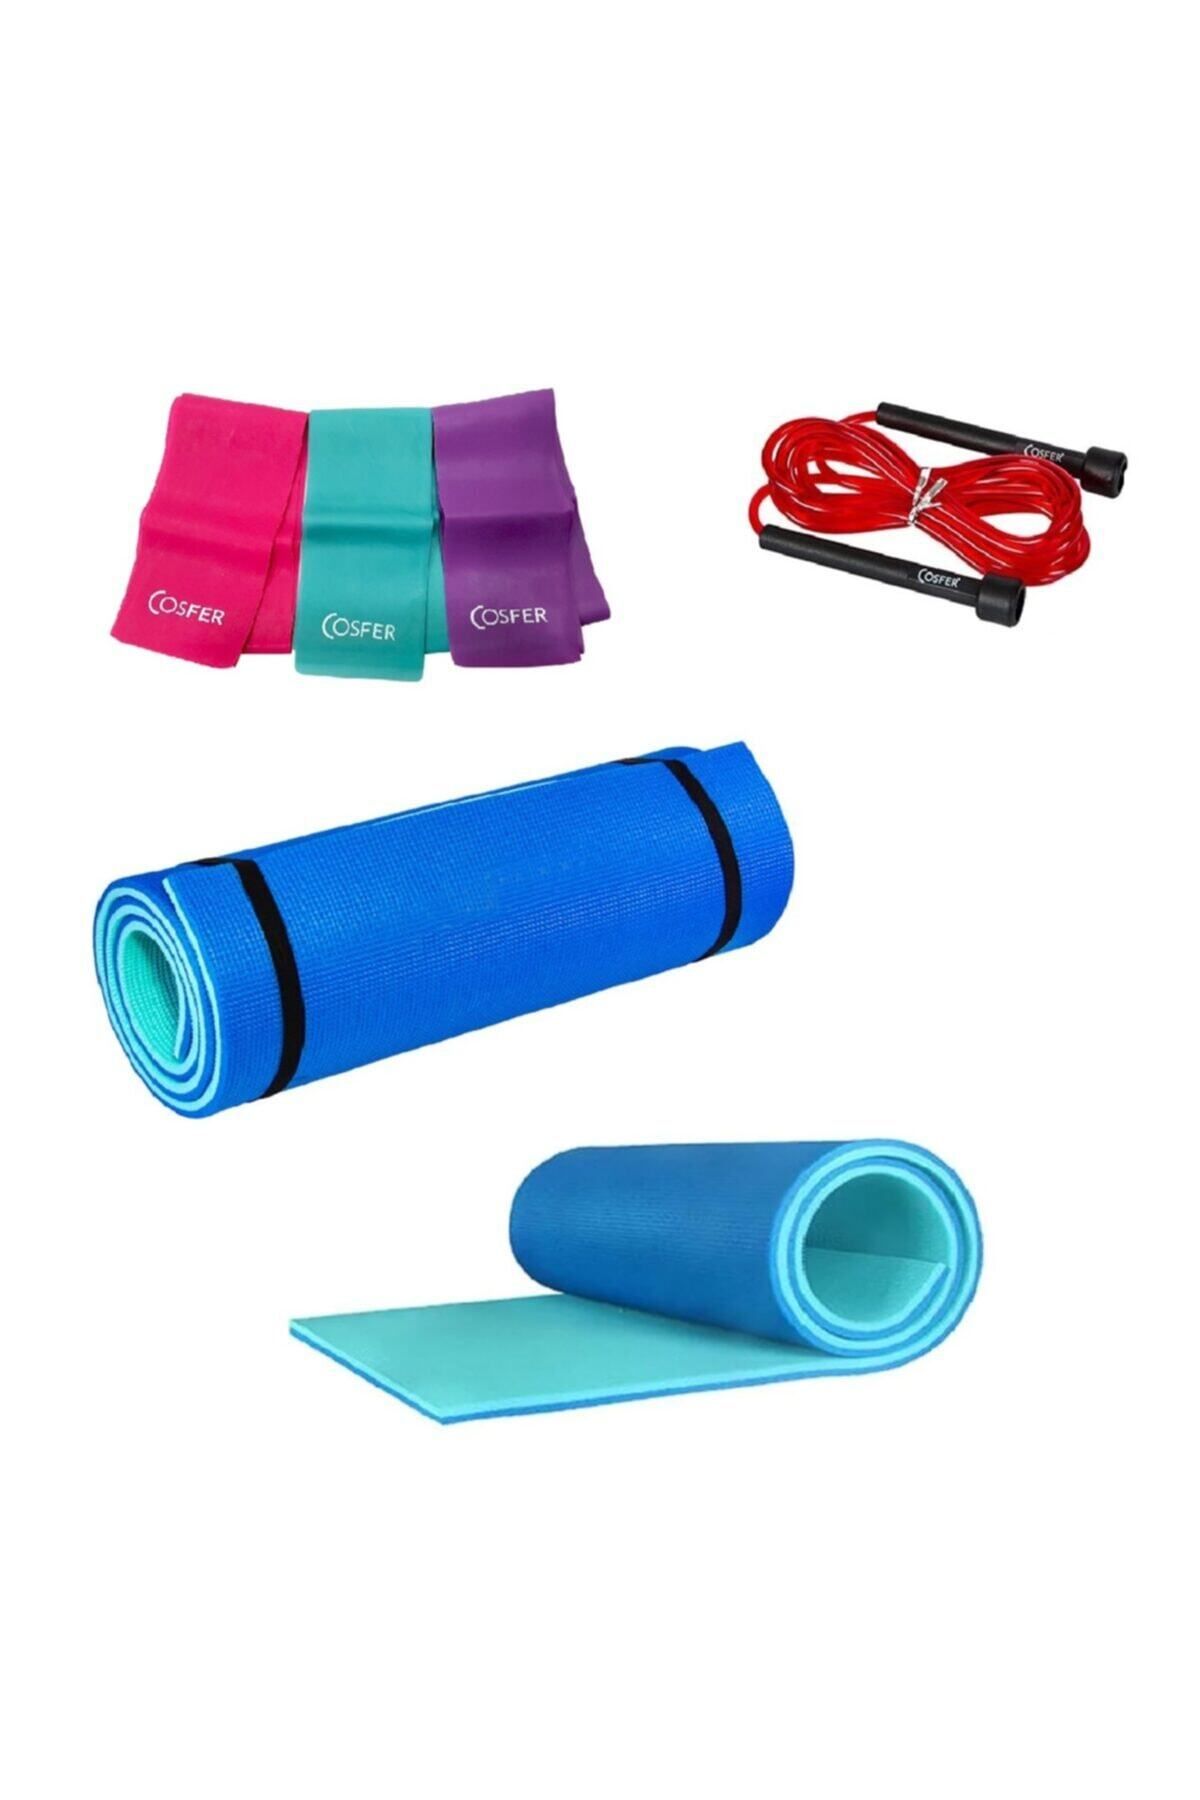 Cosfer 10 Mm Çift Renk Turkuaz-mavi Pilates Matı, Direnç Bandı Ve Atlama Ipi